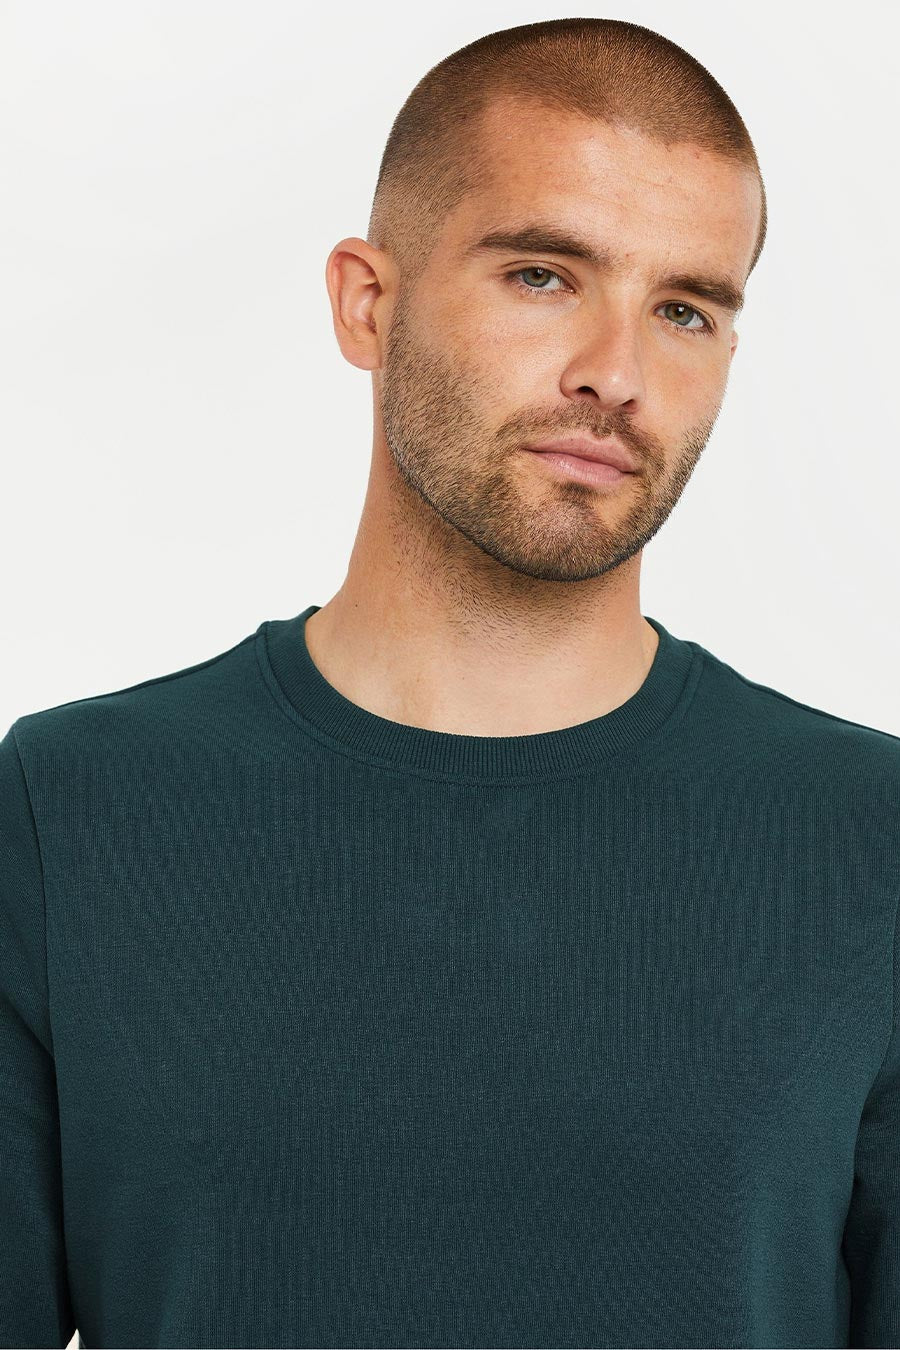 Turquoise - Fleece Sweatshirt